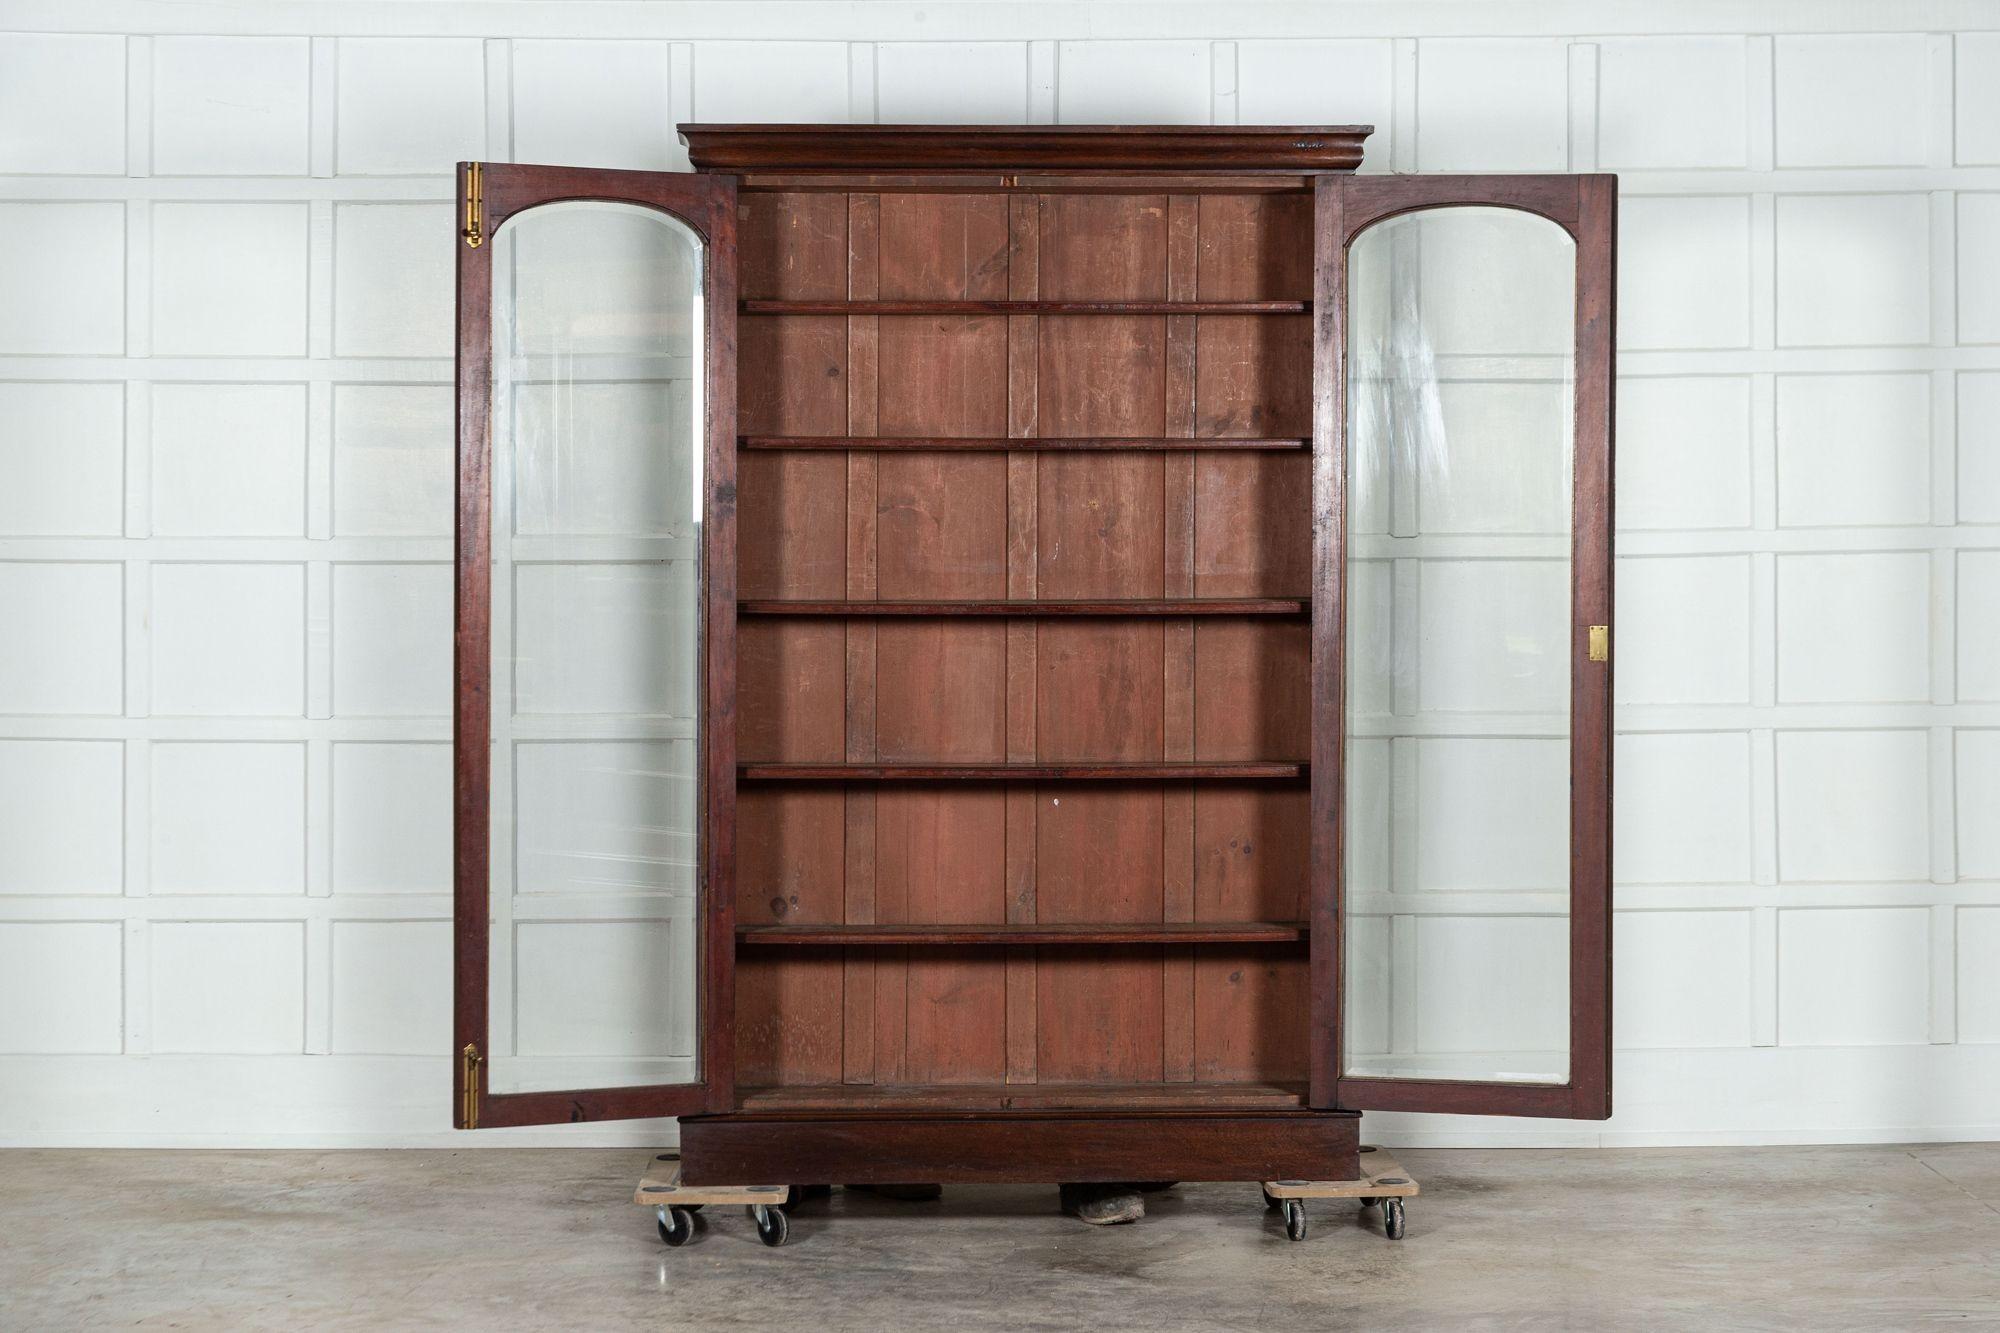 circa 1870
19th century English Mahogany Arched Glazed Bookcase
sku 1453
W138 x D31 x H209 cm